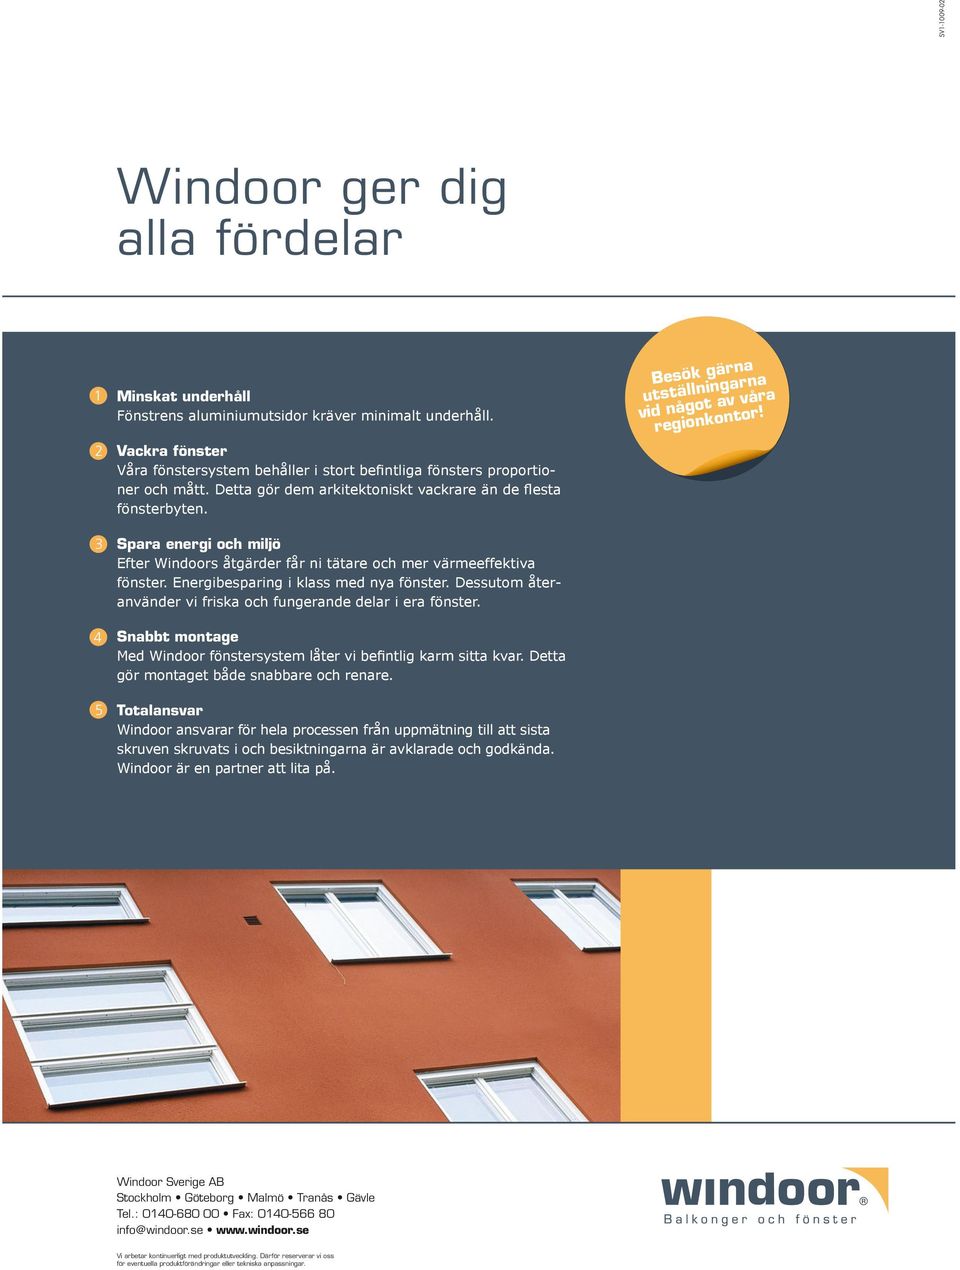 Spara energi och miljö Efter Windoors åtgärder får ni tätare och mer värmeeffektiva fönster. Energibesparing i klass med nya fönster.